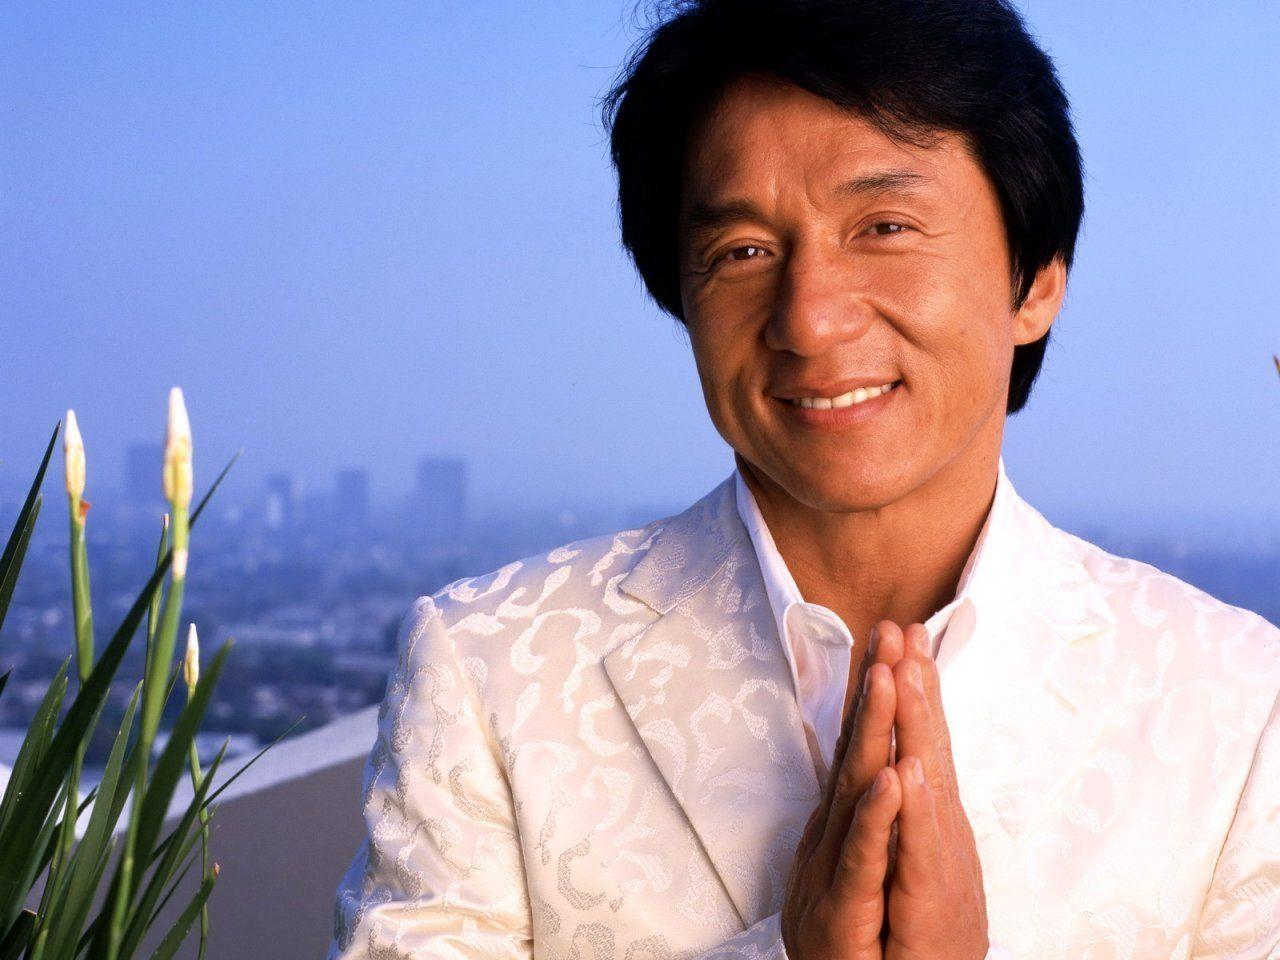 Jackie Chan Wallpaper Photo 54866 1280x960 px